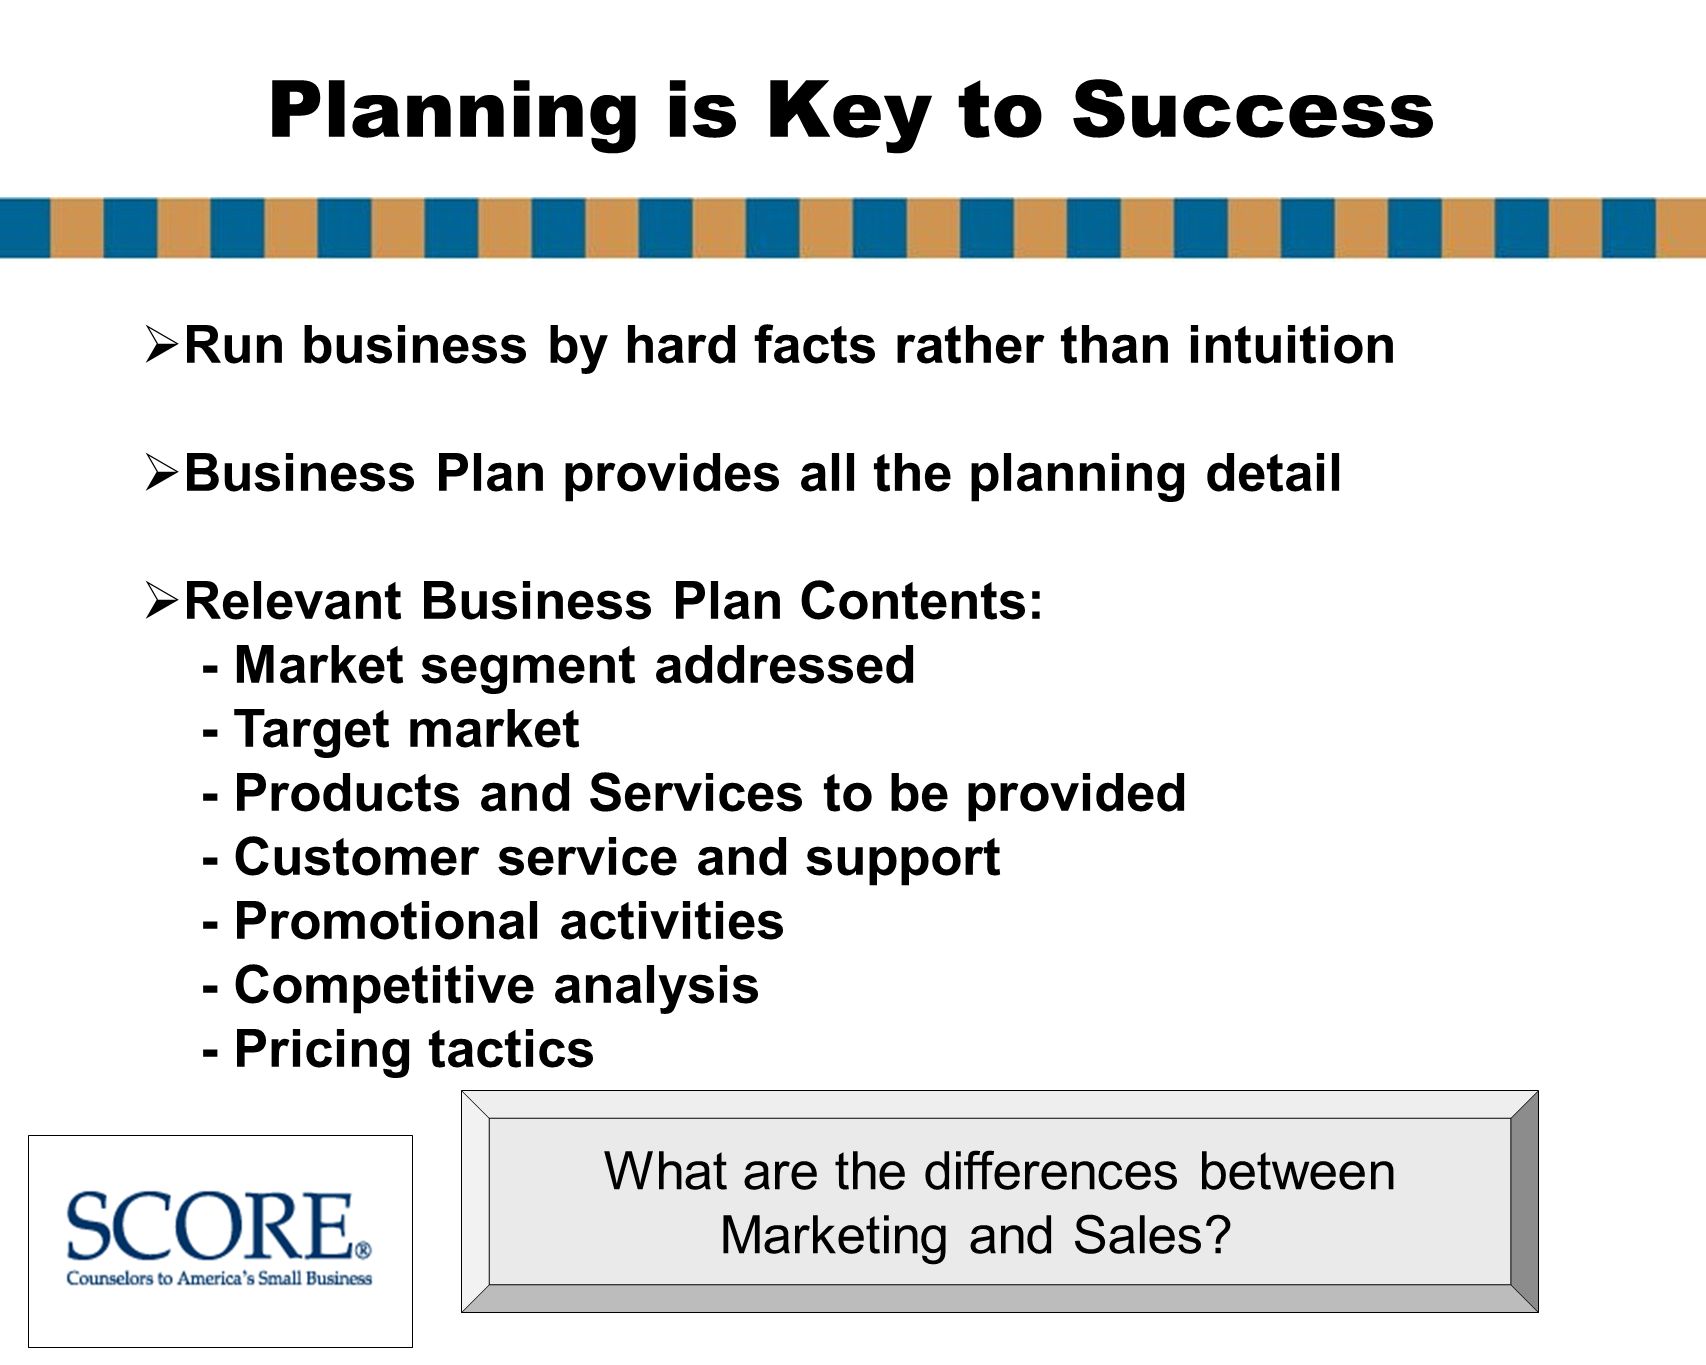 Score business plan help